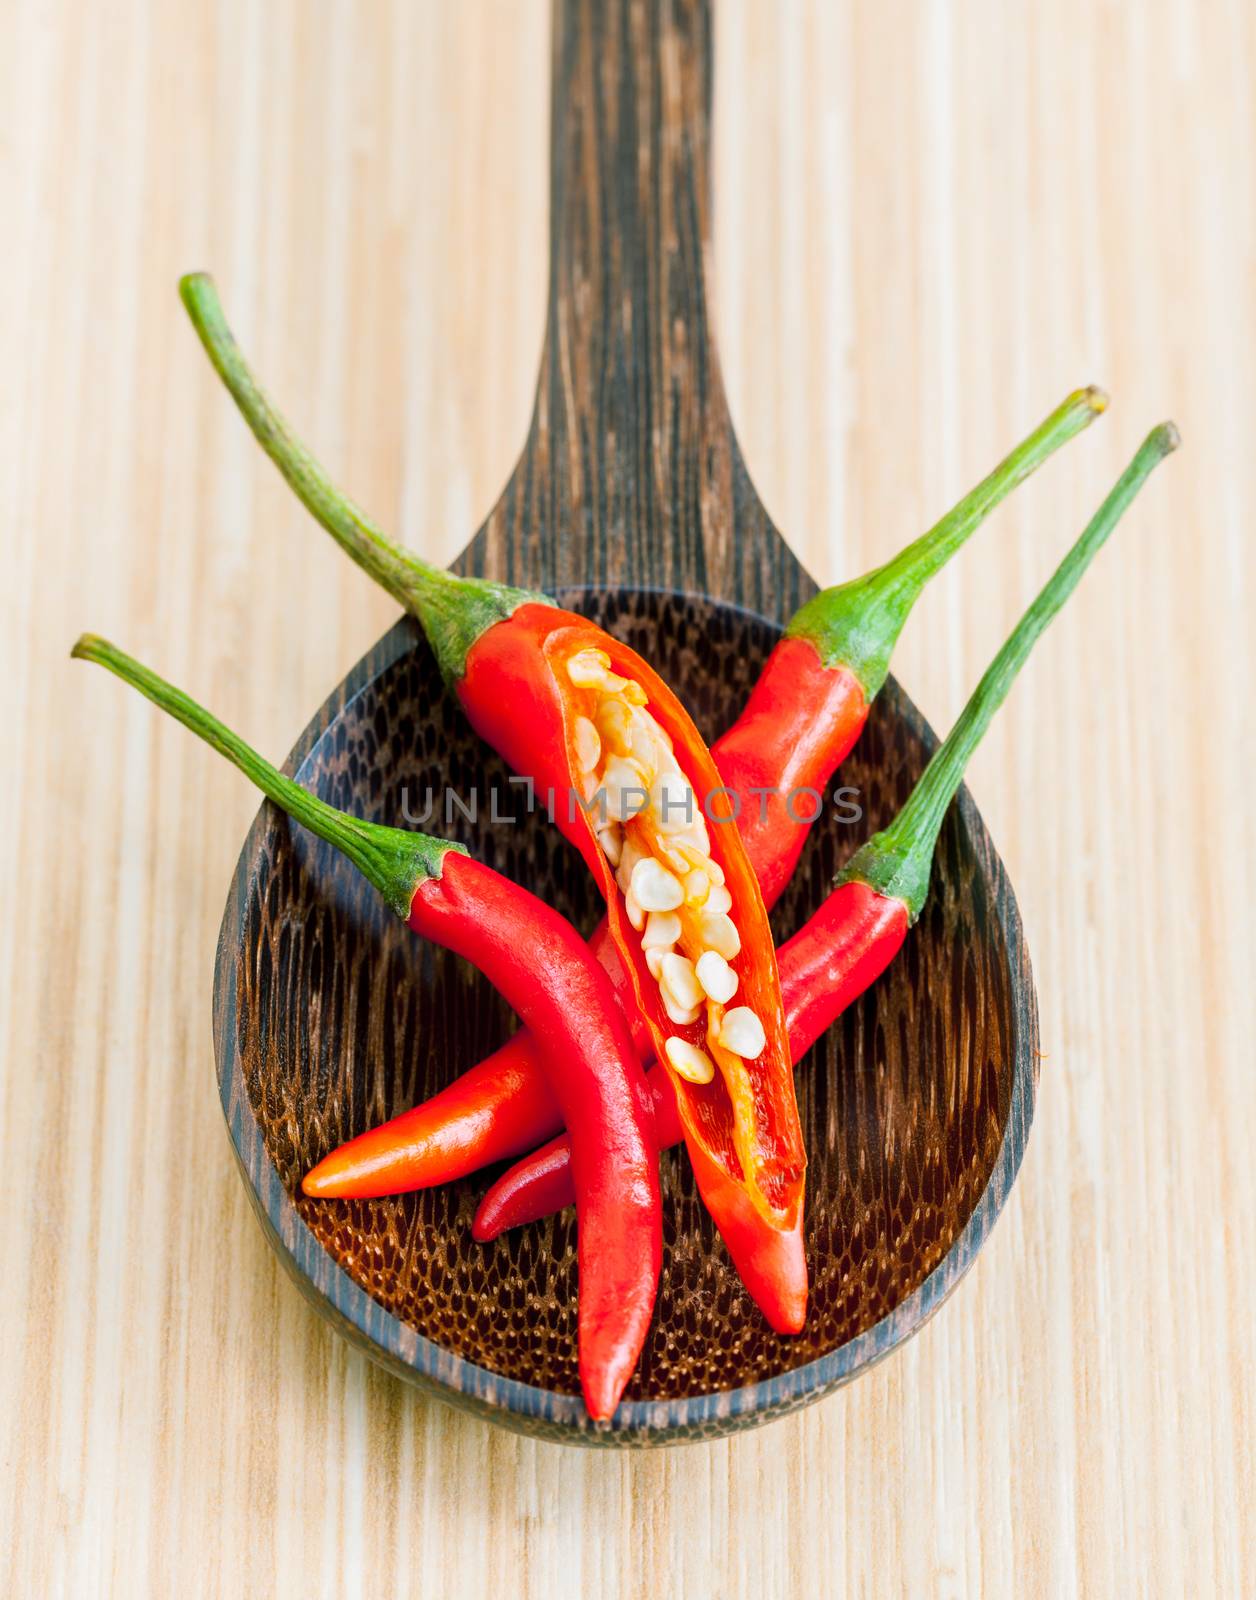 Thai food Cooking ingredients. - spice tast by kerdkanno